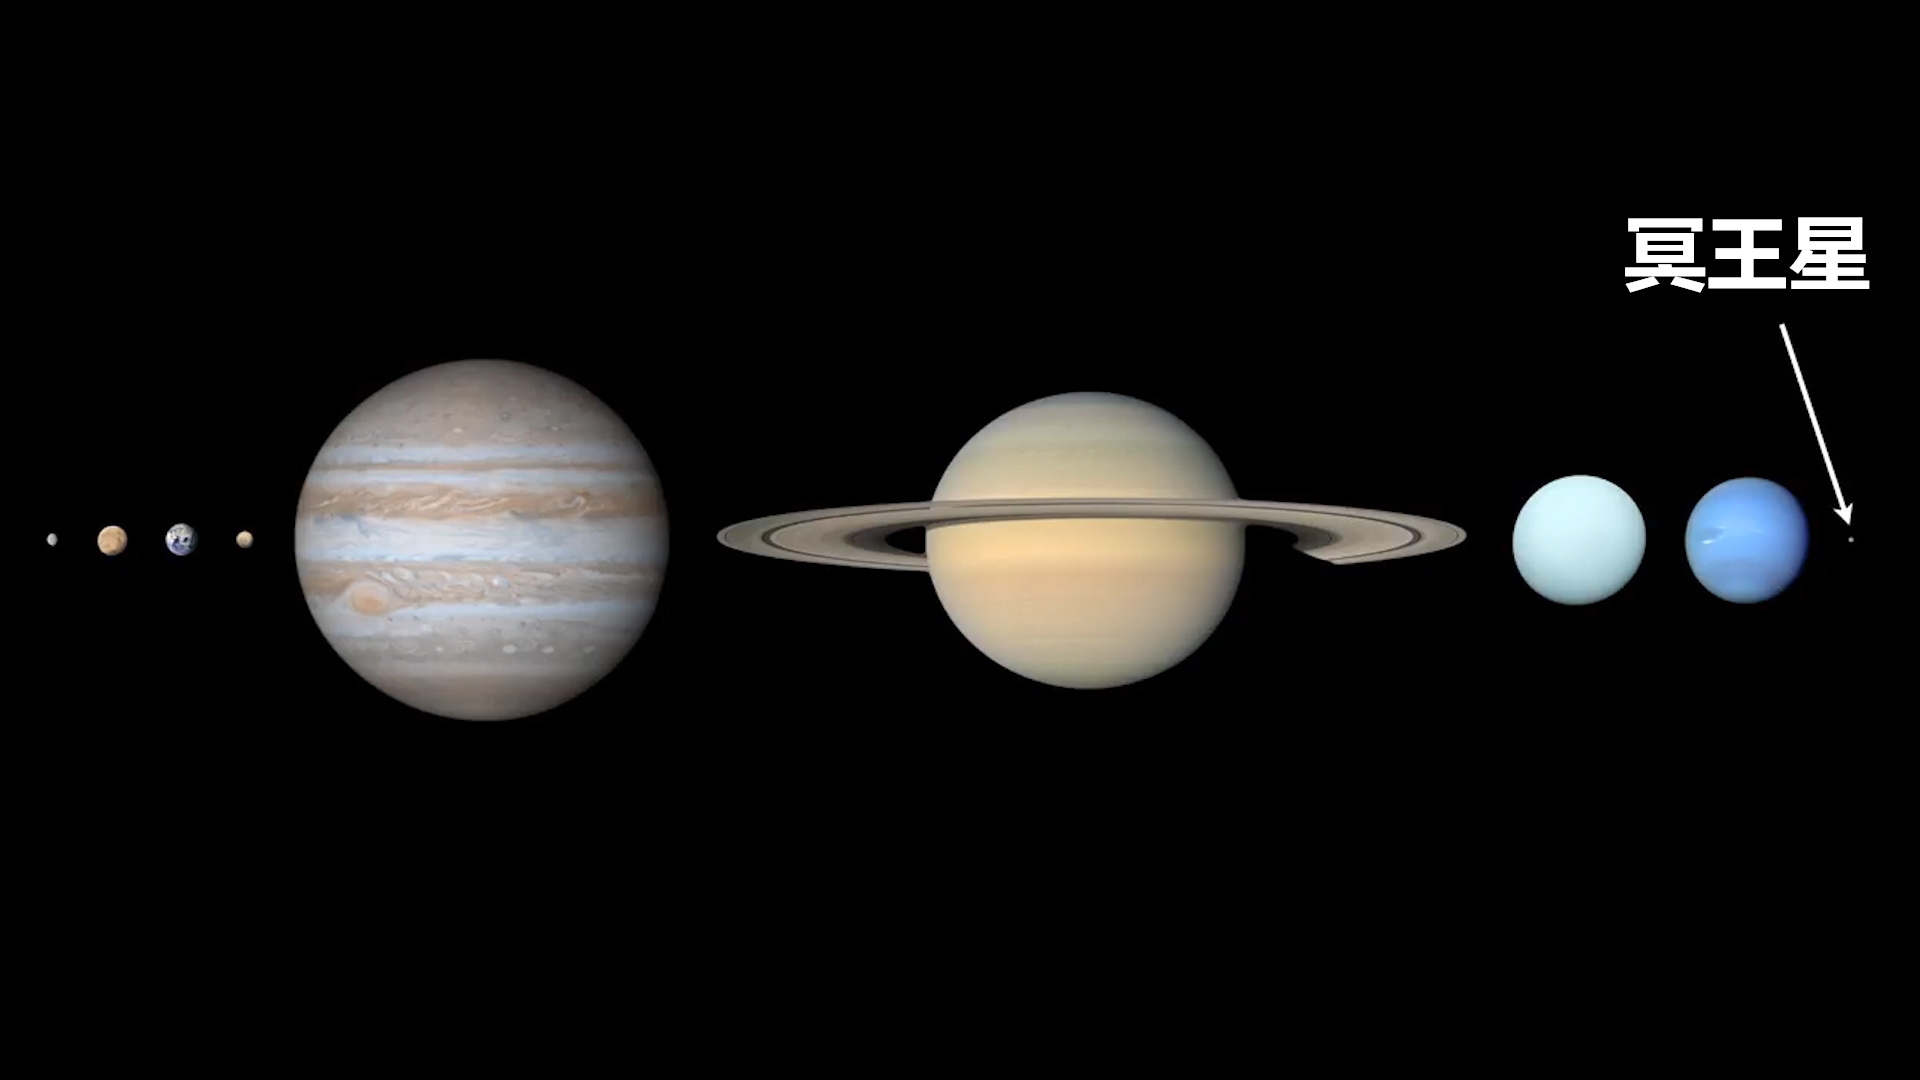 冥王星为什么不算九大行星之一了?因为个子小